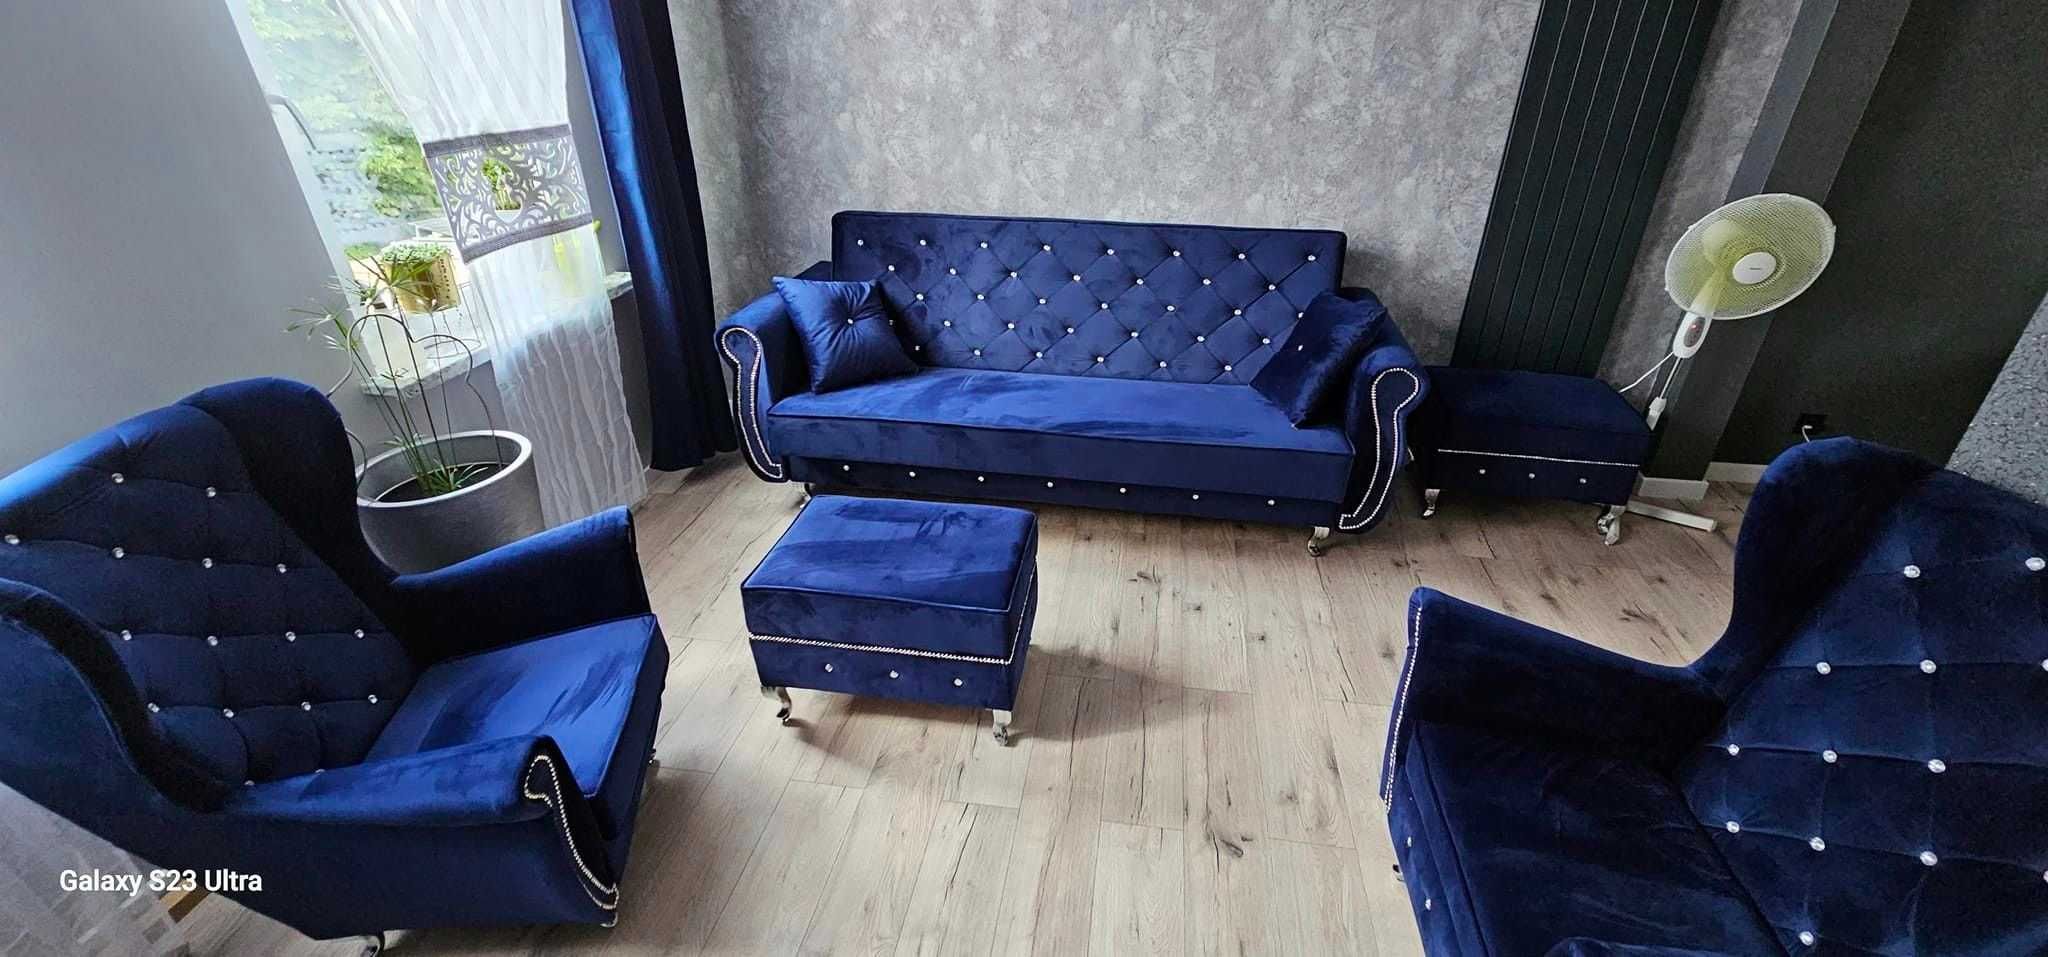 RATY zestaw zfunkcją spania komplet uszak sofa fotel kanapa rozkładana